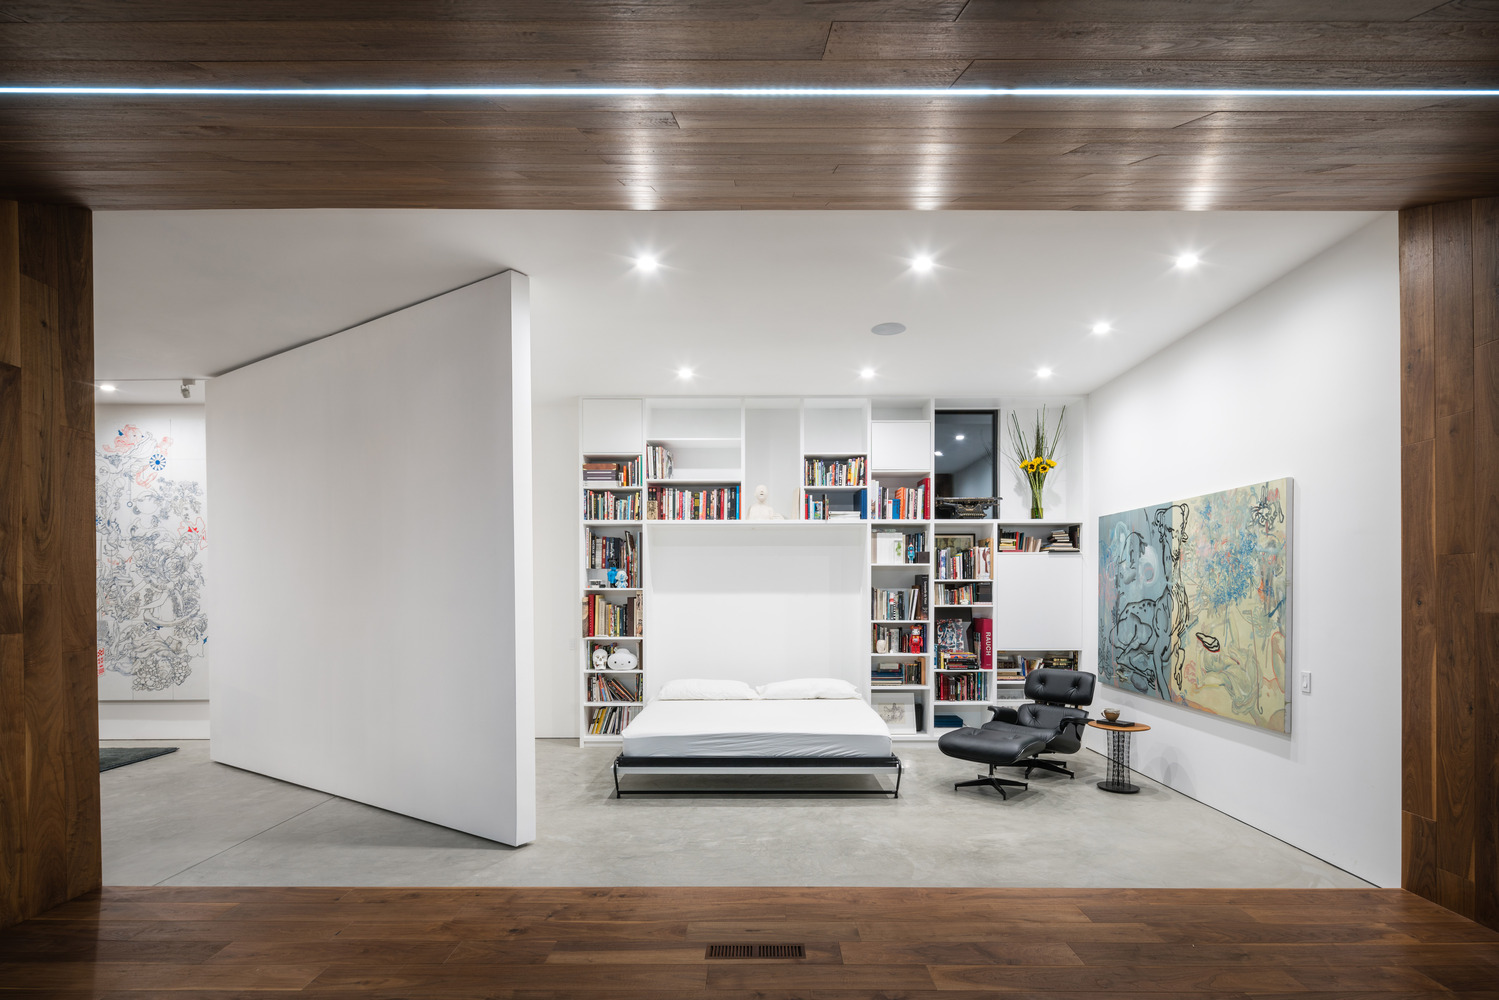 Casa Janss Dan Brunn Architecture – Brandon Shigeta/Archdaily – A casa, que se tornou referência em Los Angeles nos ano anos 1970 e 80, foi reformada pelo Dan Brunn reconhecido por sua linguagem minimalista